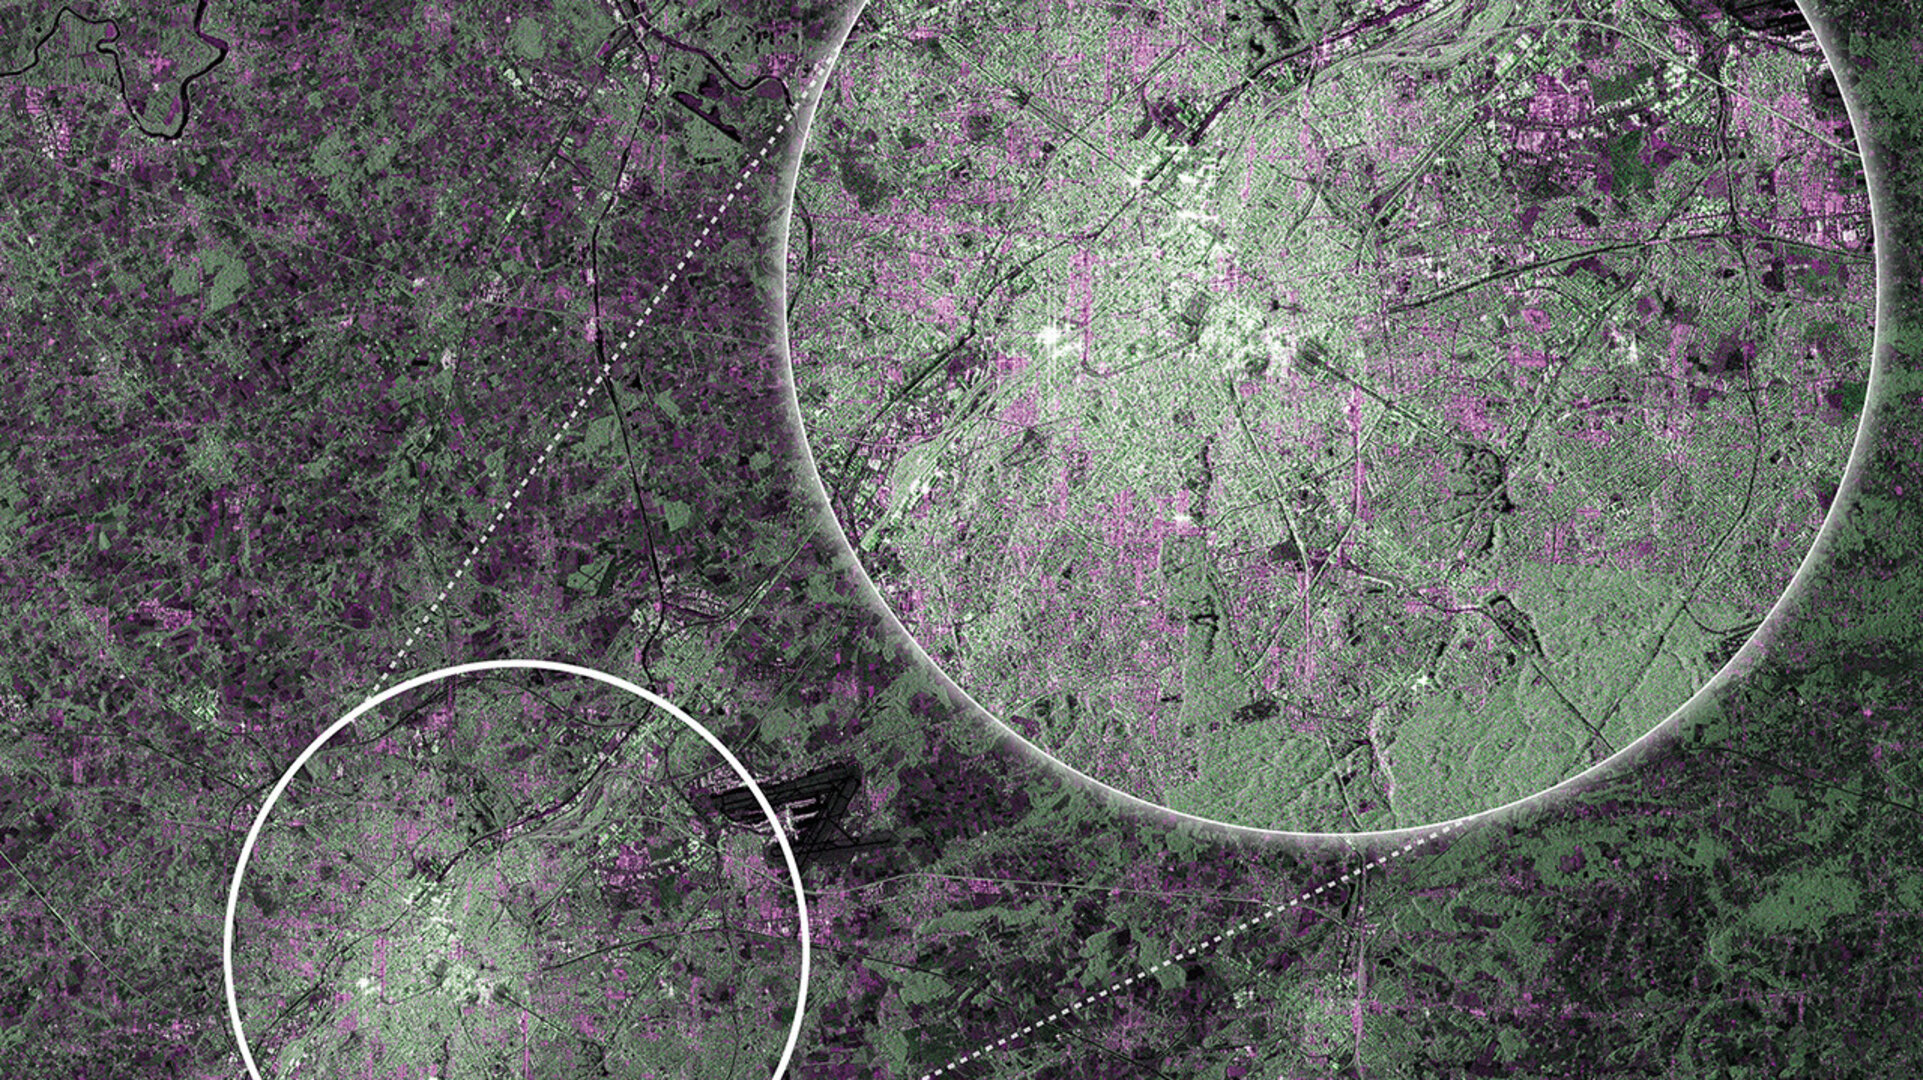 Des images satellitaires, comme cette photo de Bruxelles prise par Sentinel-1, ont de nombreuses applications qui améliorent la vie sur Terre